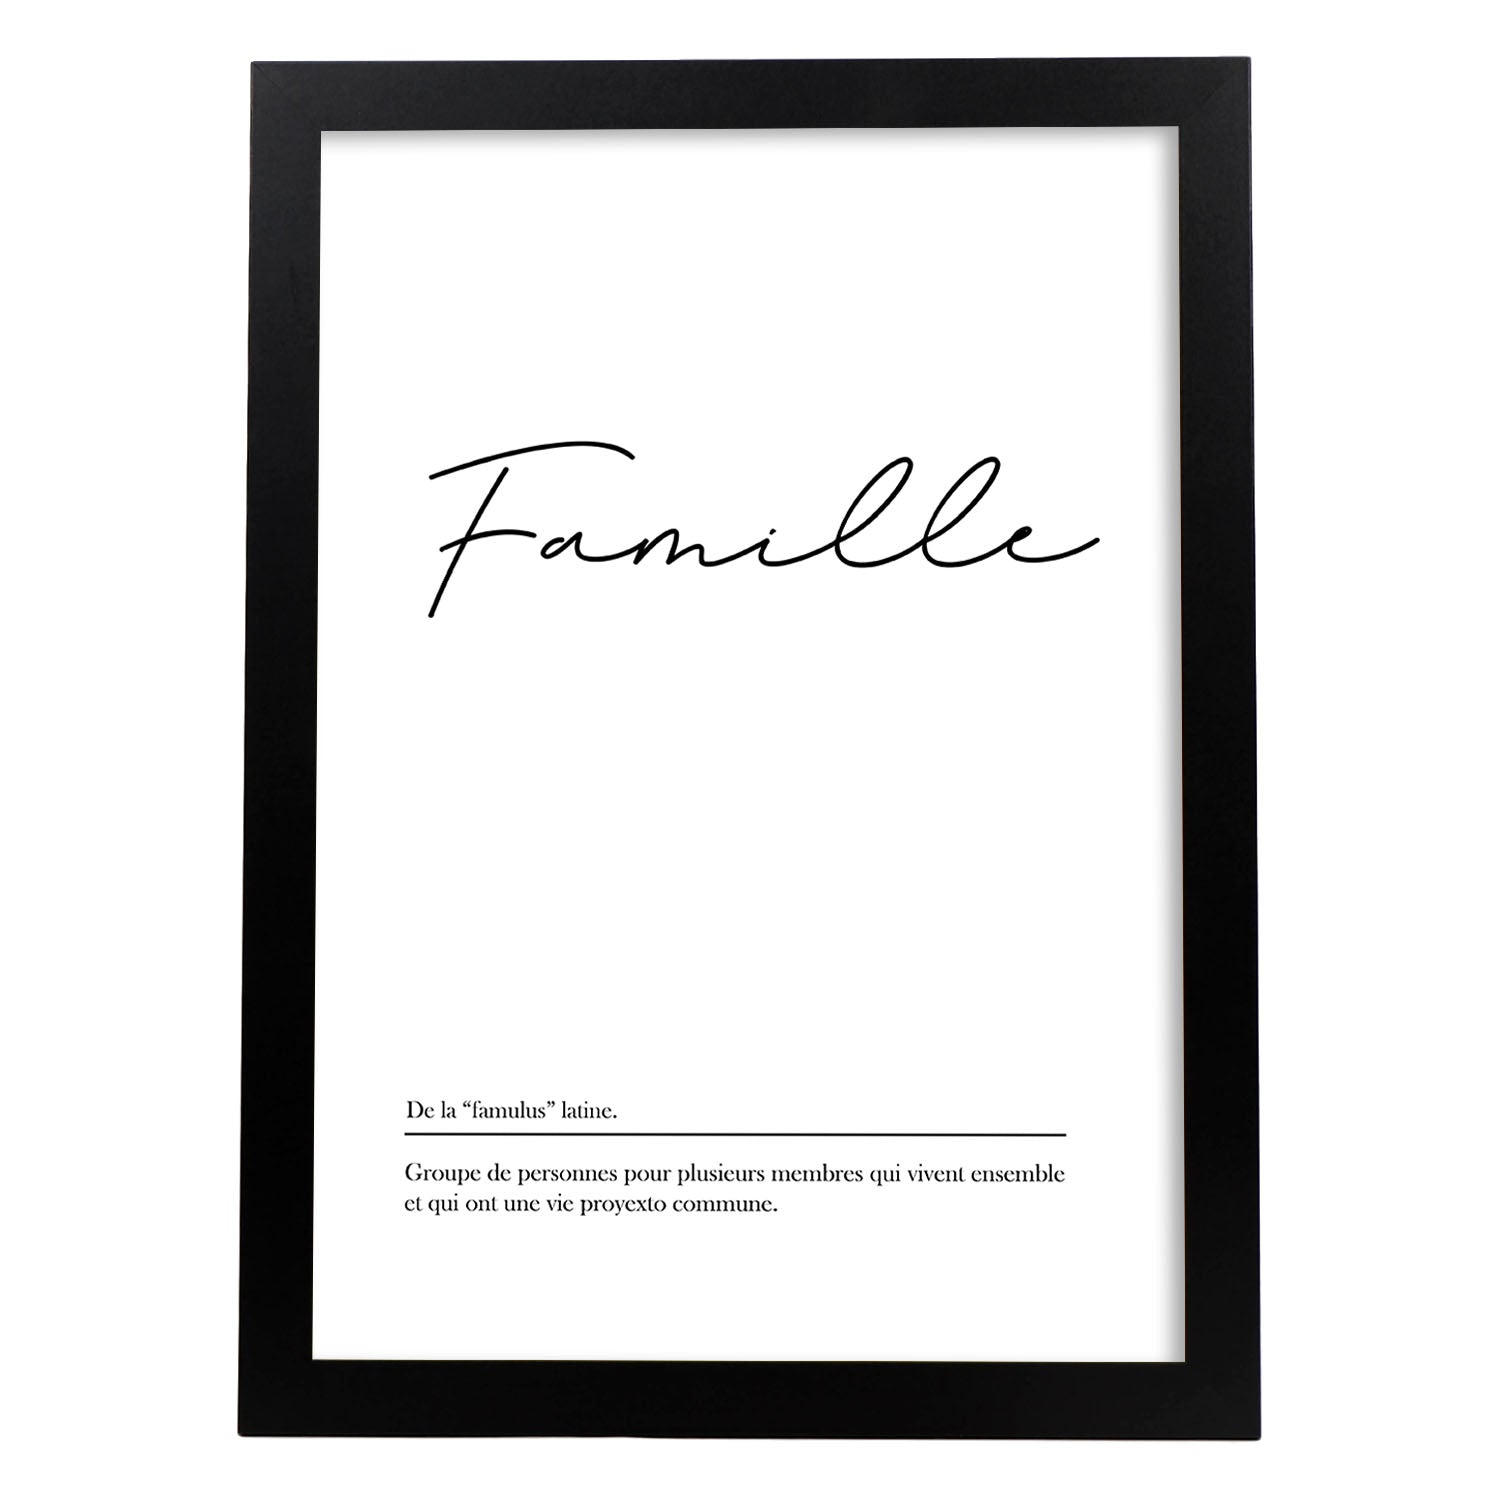 Poster con palabras en francés. Lámina Famille con definición y fondo blanco.-Artwork-Nacnic-A3-Marco Negro-Nacnic Estudio SL